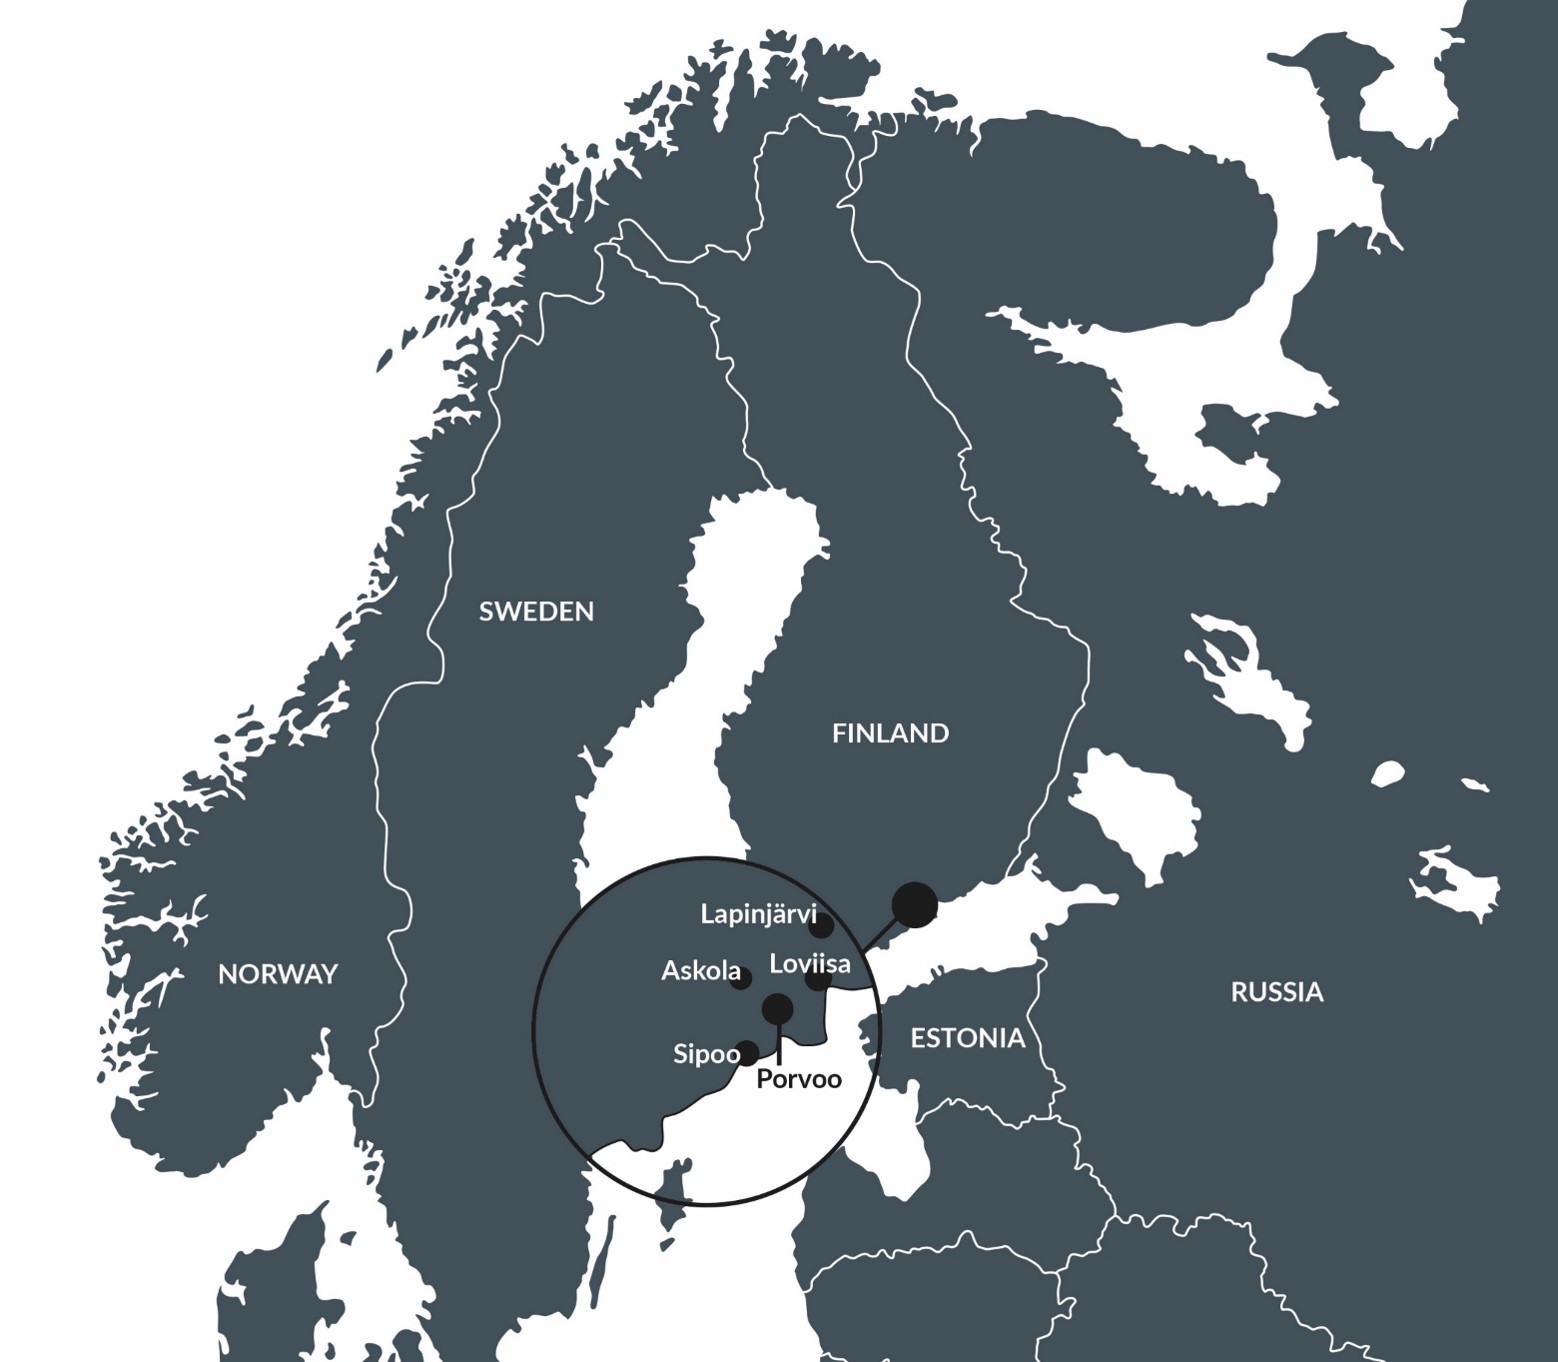 Lapinjärvi, Loviisa, Askola, Sipoo, Porvoo.